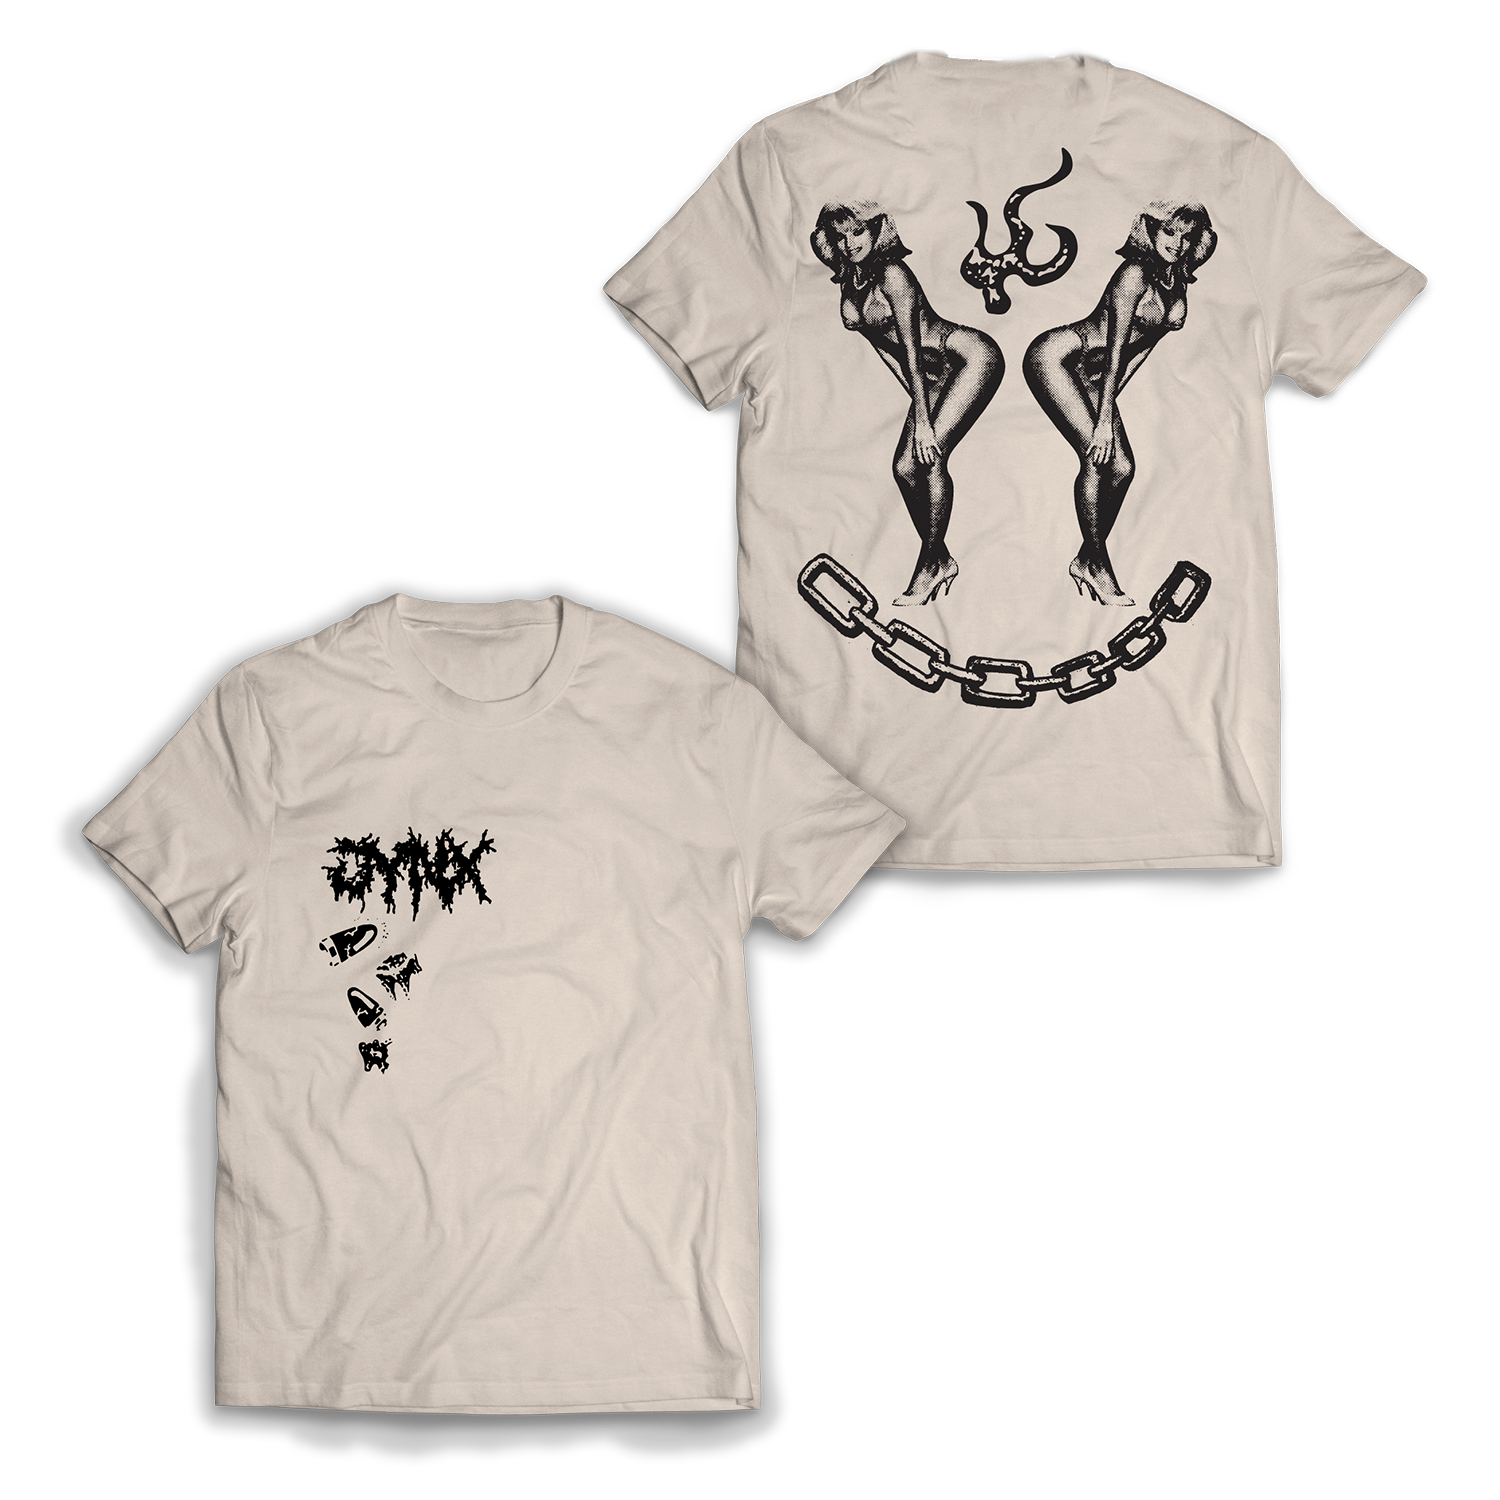 White 'V-Emblem Chain' t-shirt